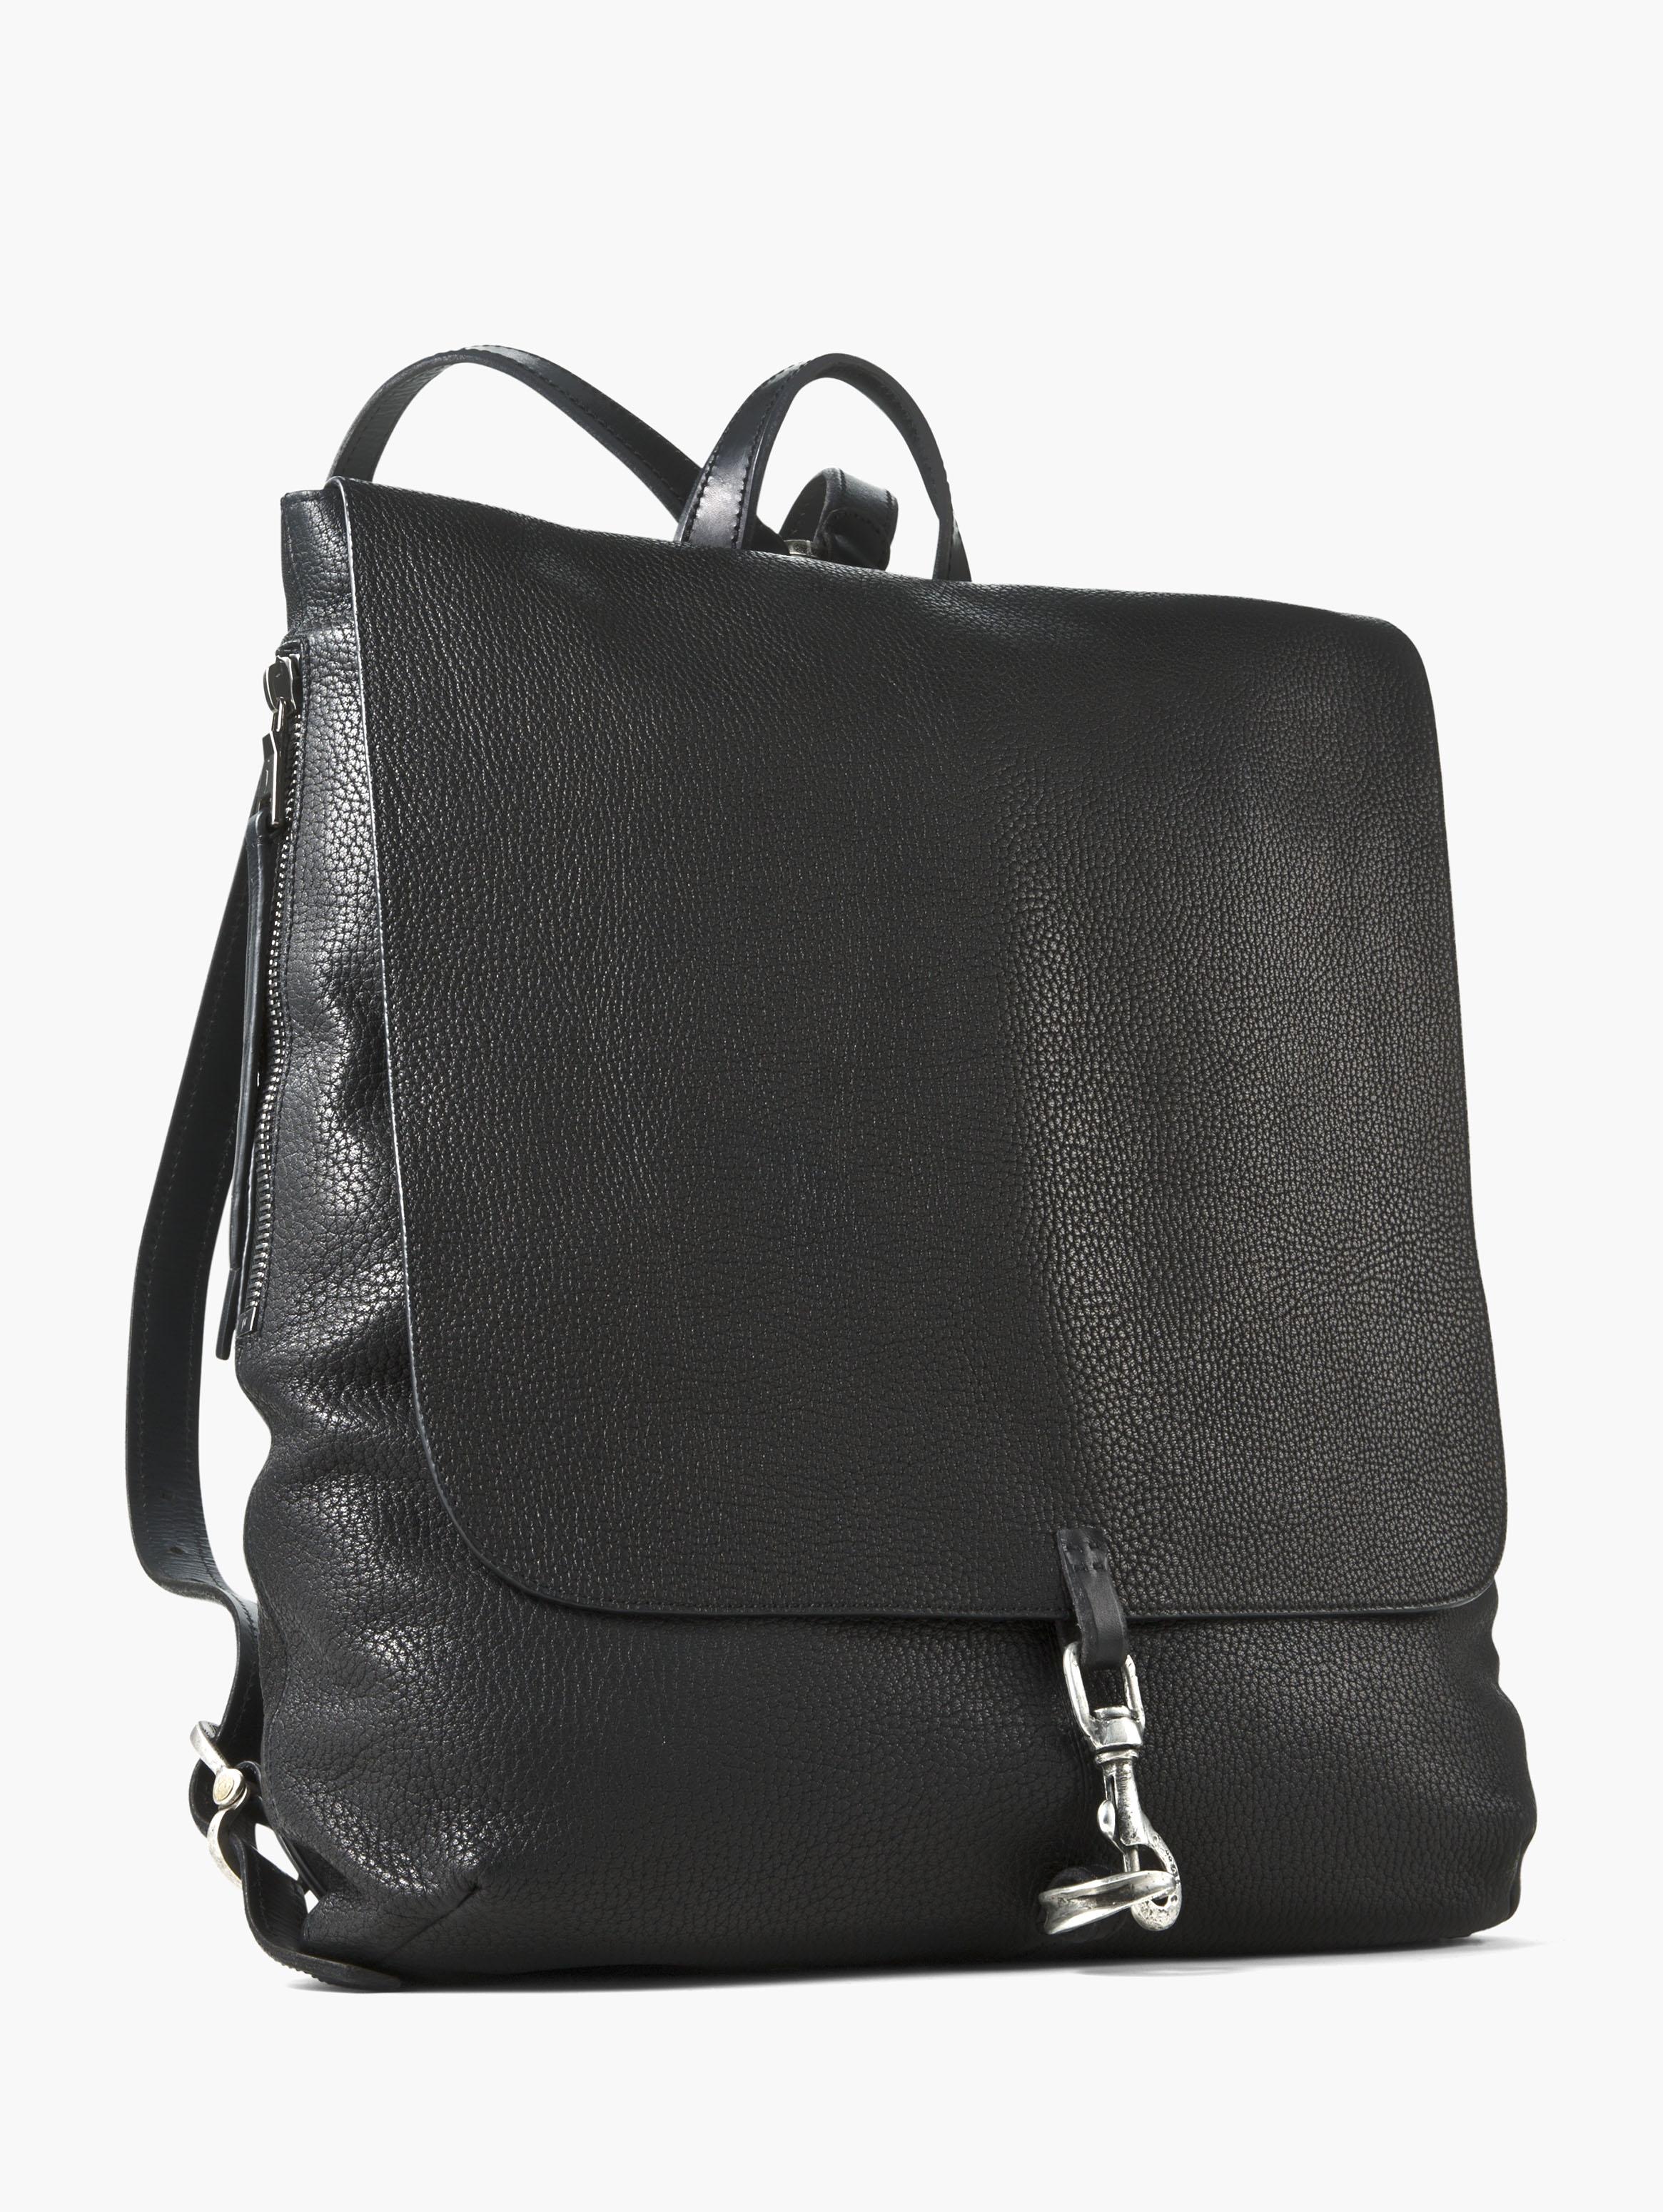 John Varvatos Pebbled Leather Wrangler Backpack